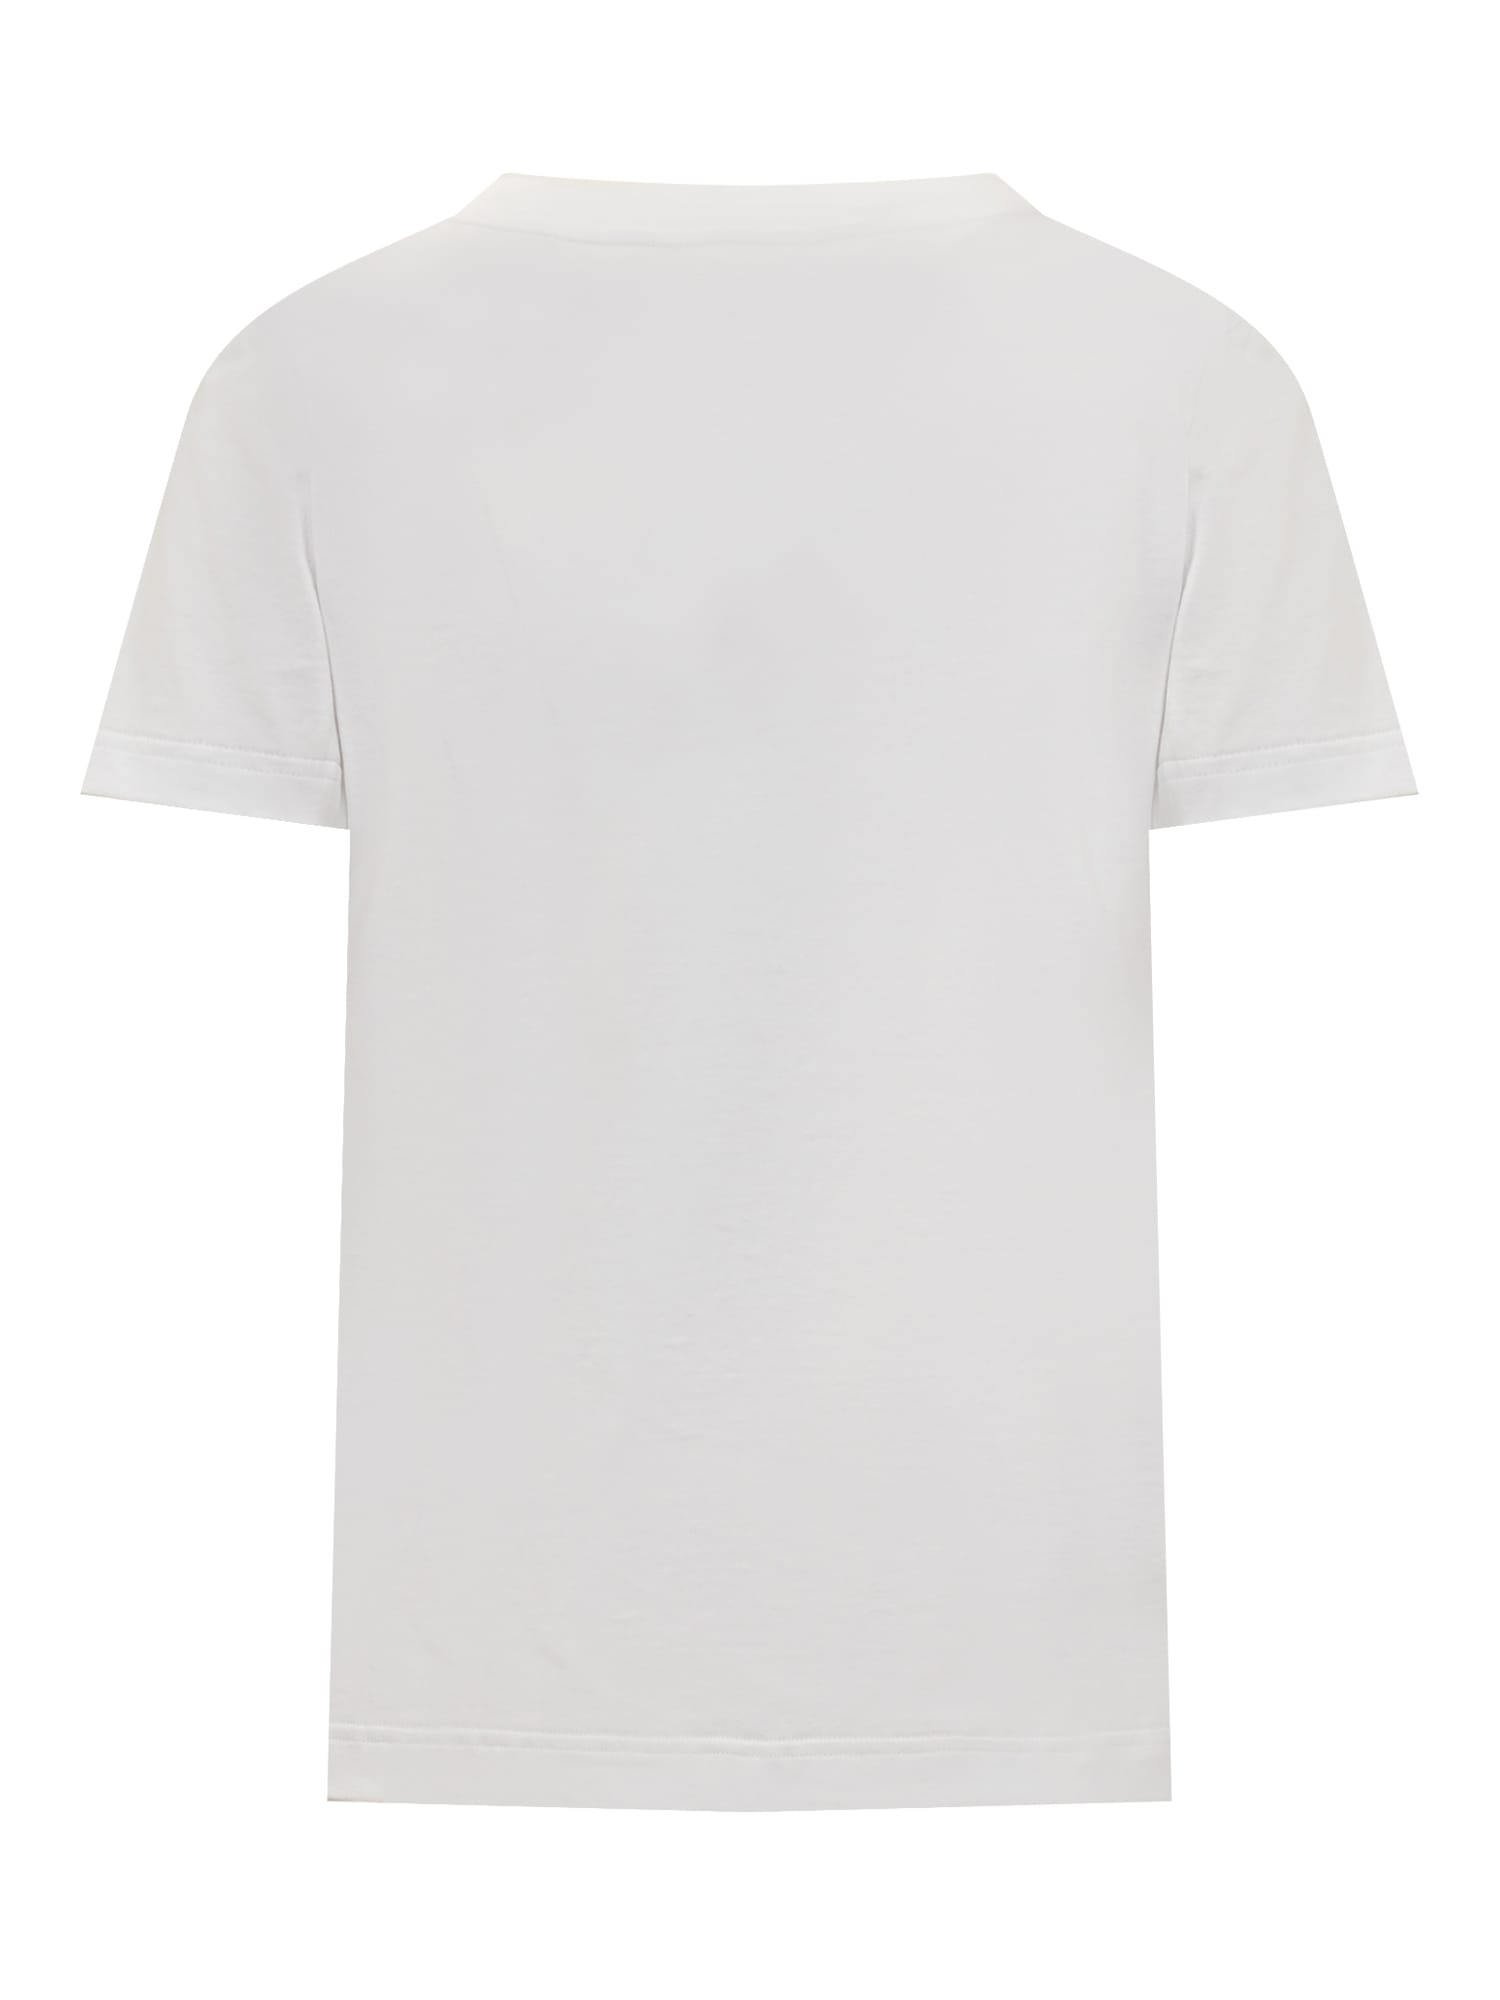 Shop Dolce & Gabbana Dolce&gabbana Flock Jersey T-shirt. In Bianco Ottico